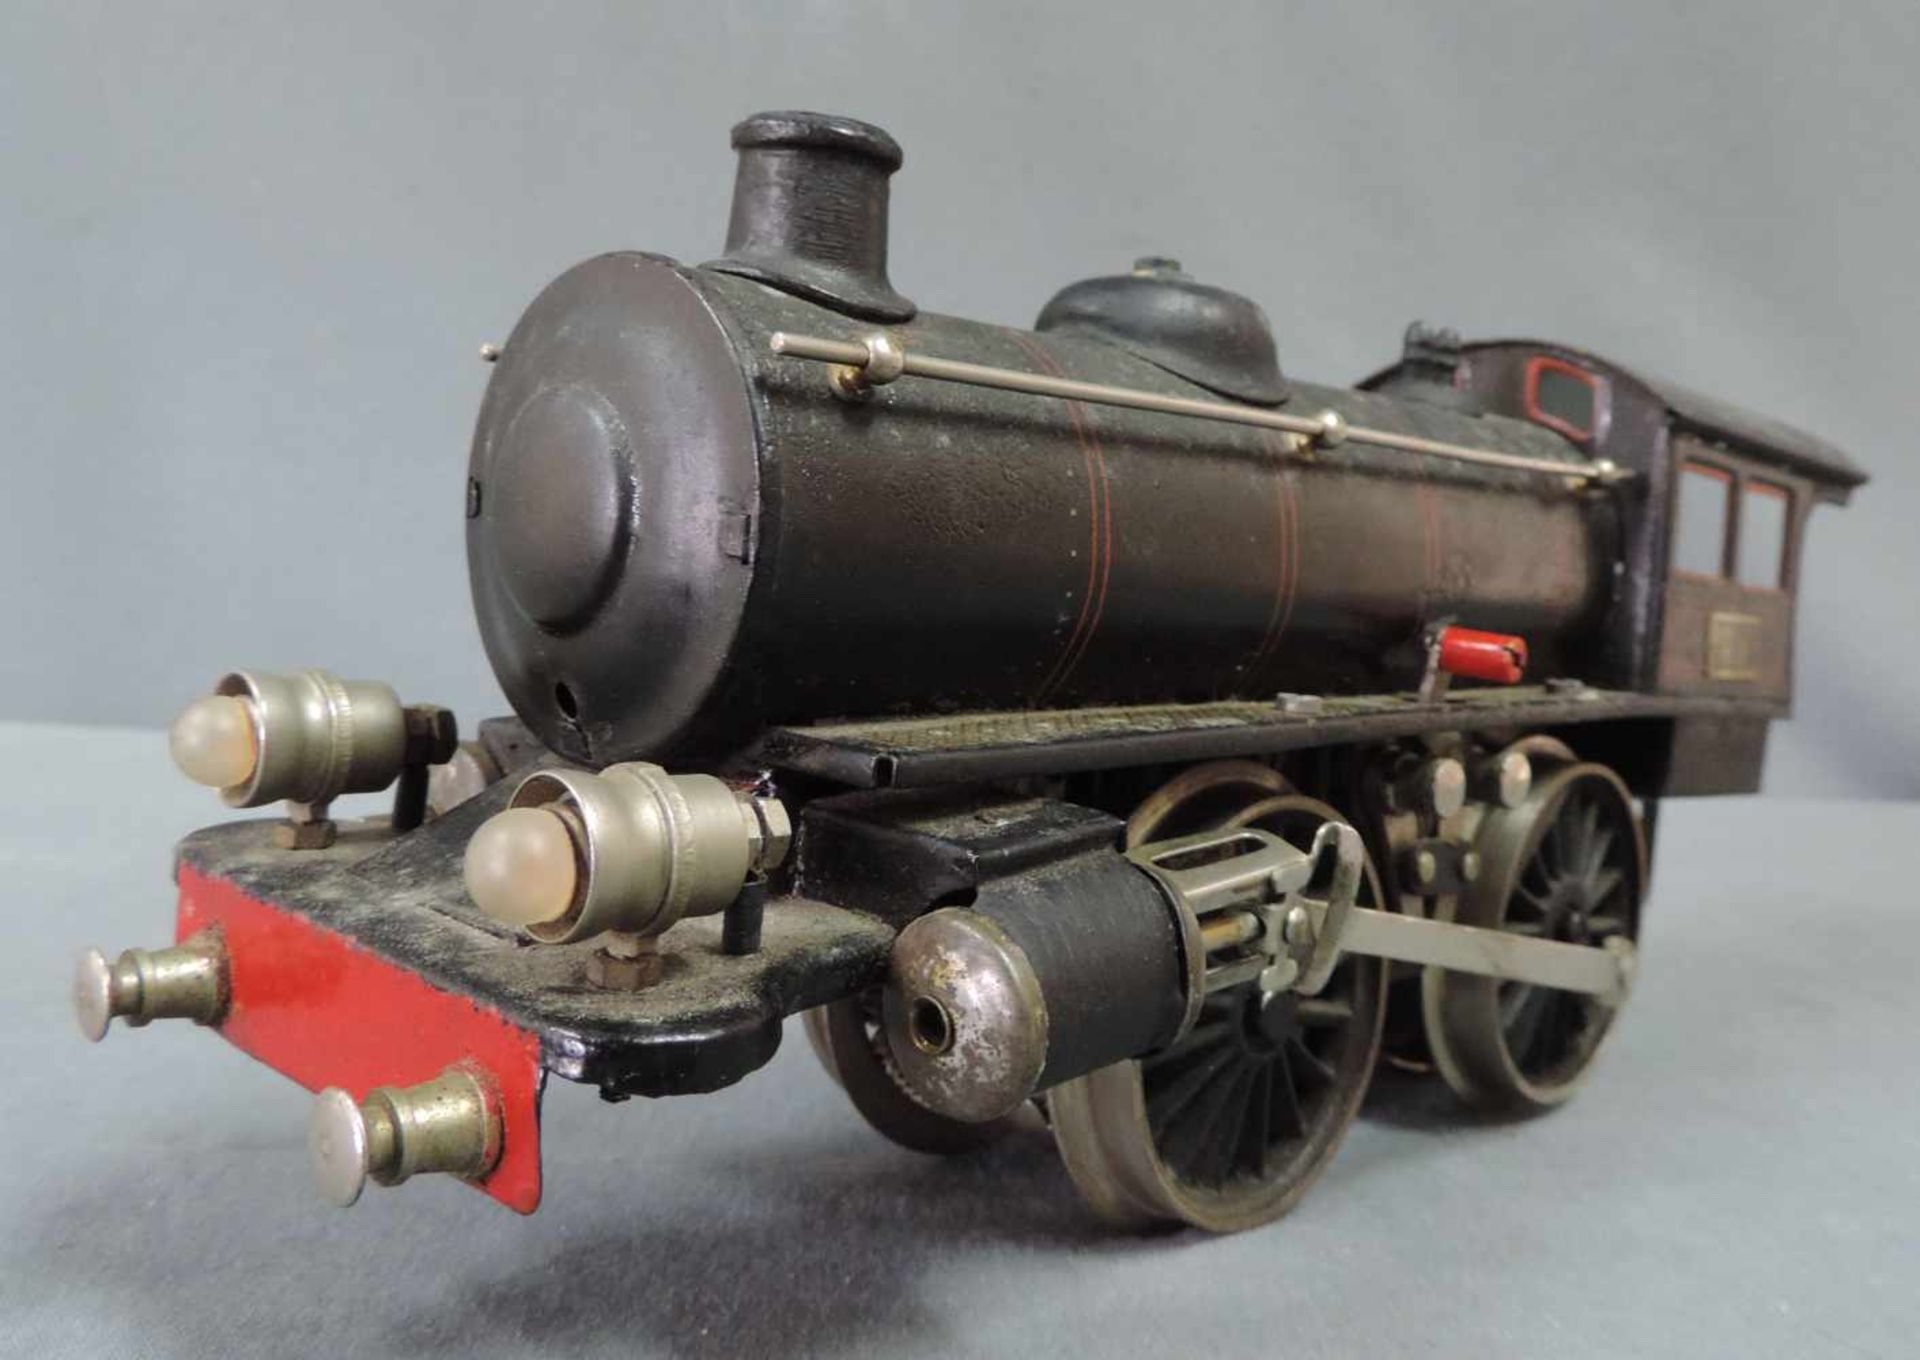 Modell Lokomotive. Märklin. "R 13041" Spur 1 27 cm x 10 cm. Modell Dampflock "R 13041" von Märklin - Bild 7 aus 8